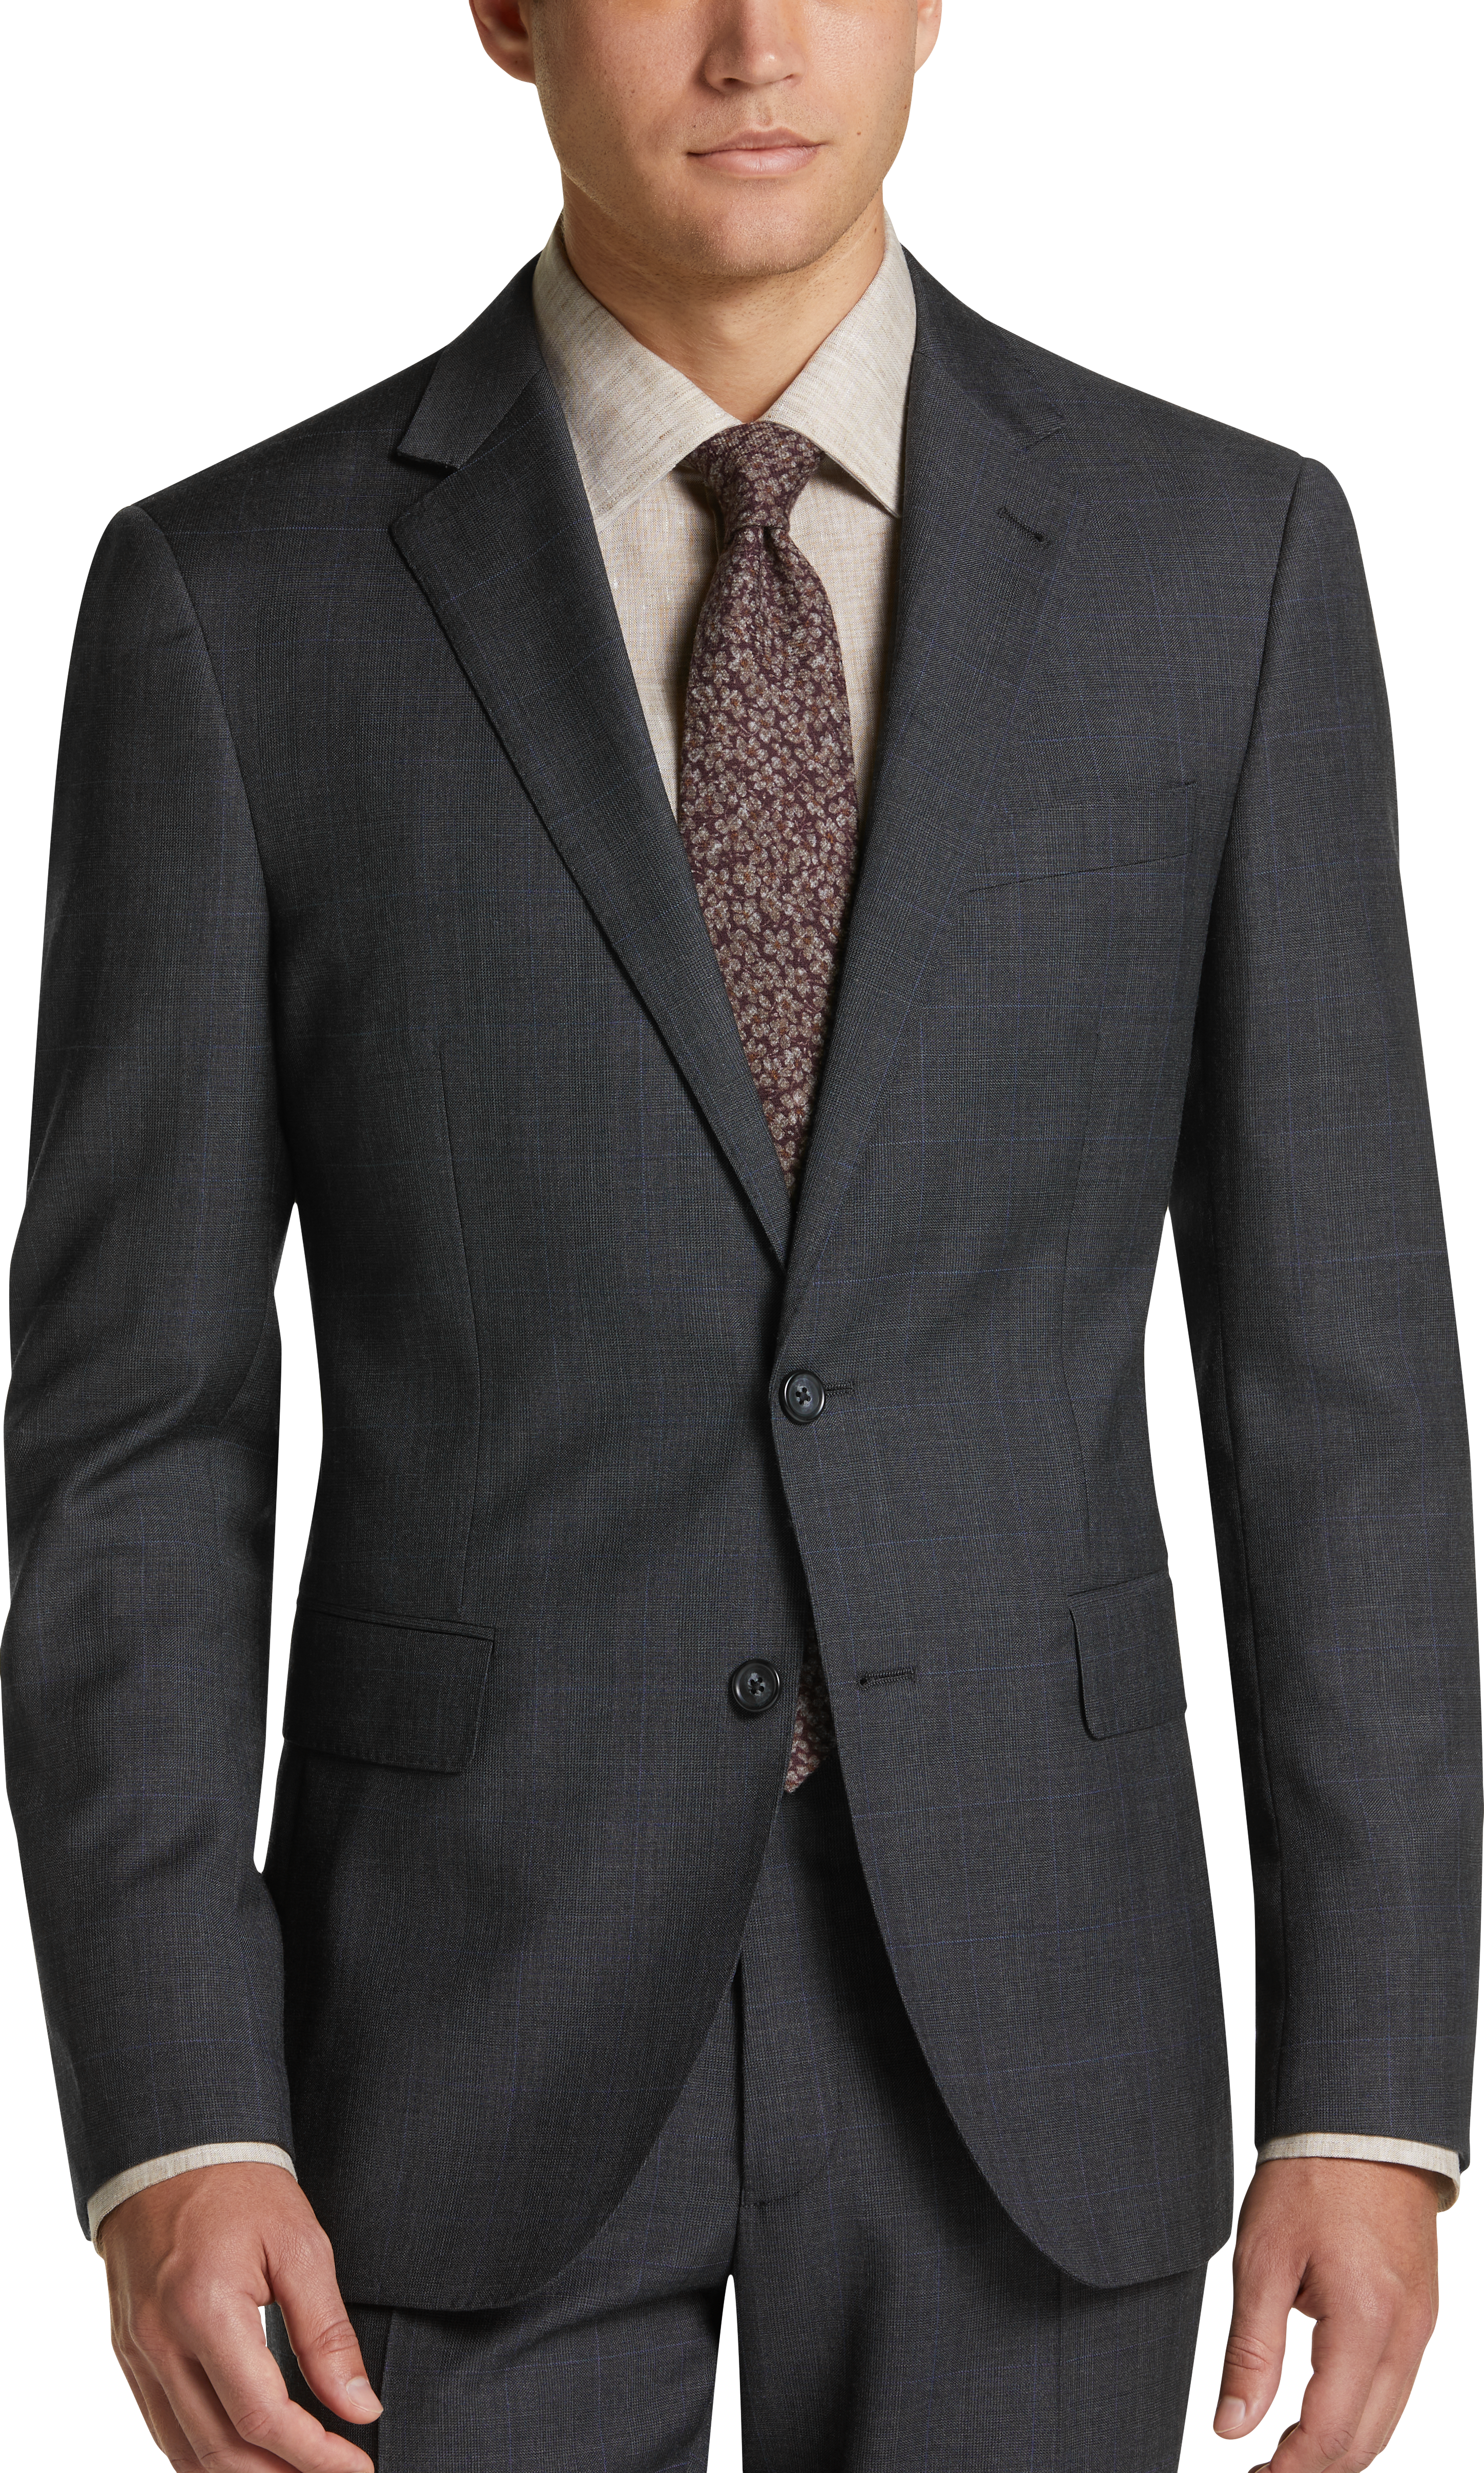 JOE Joseph Abboud Slim Fit Suit, Charcoal Plaid - Men's Sale | Men's ...